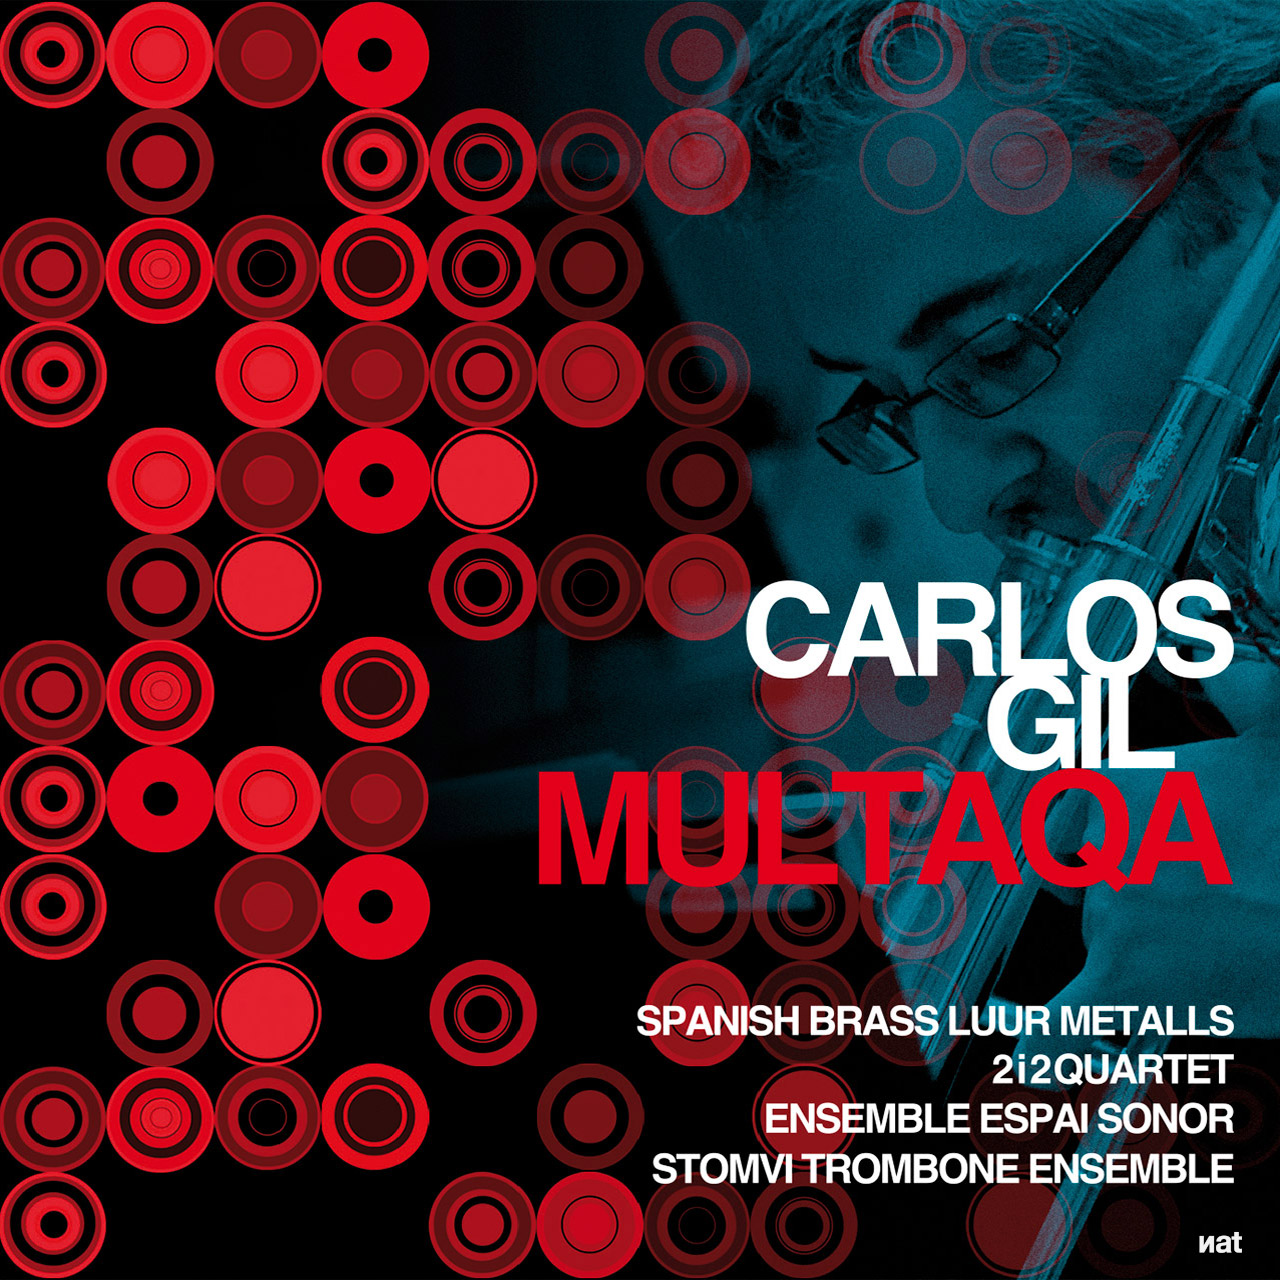 Diseño y fotografía para el disco CD 'Multaqa' de Carlos Gil.